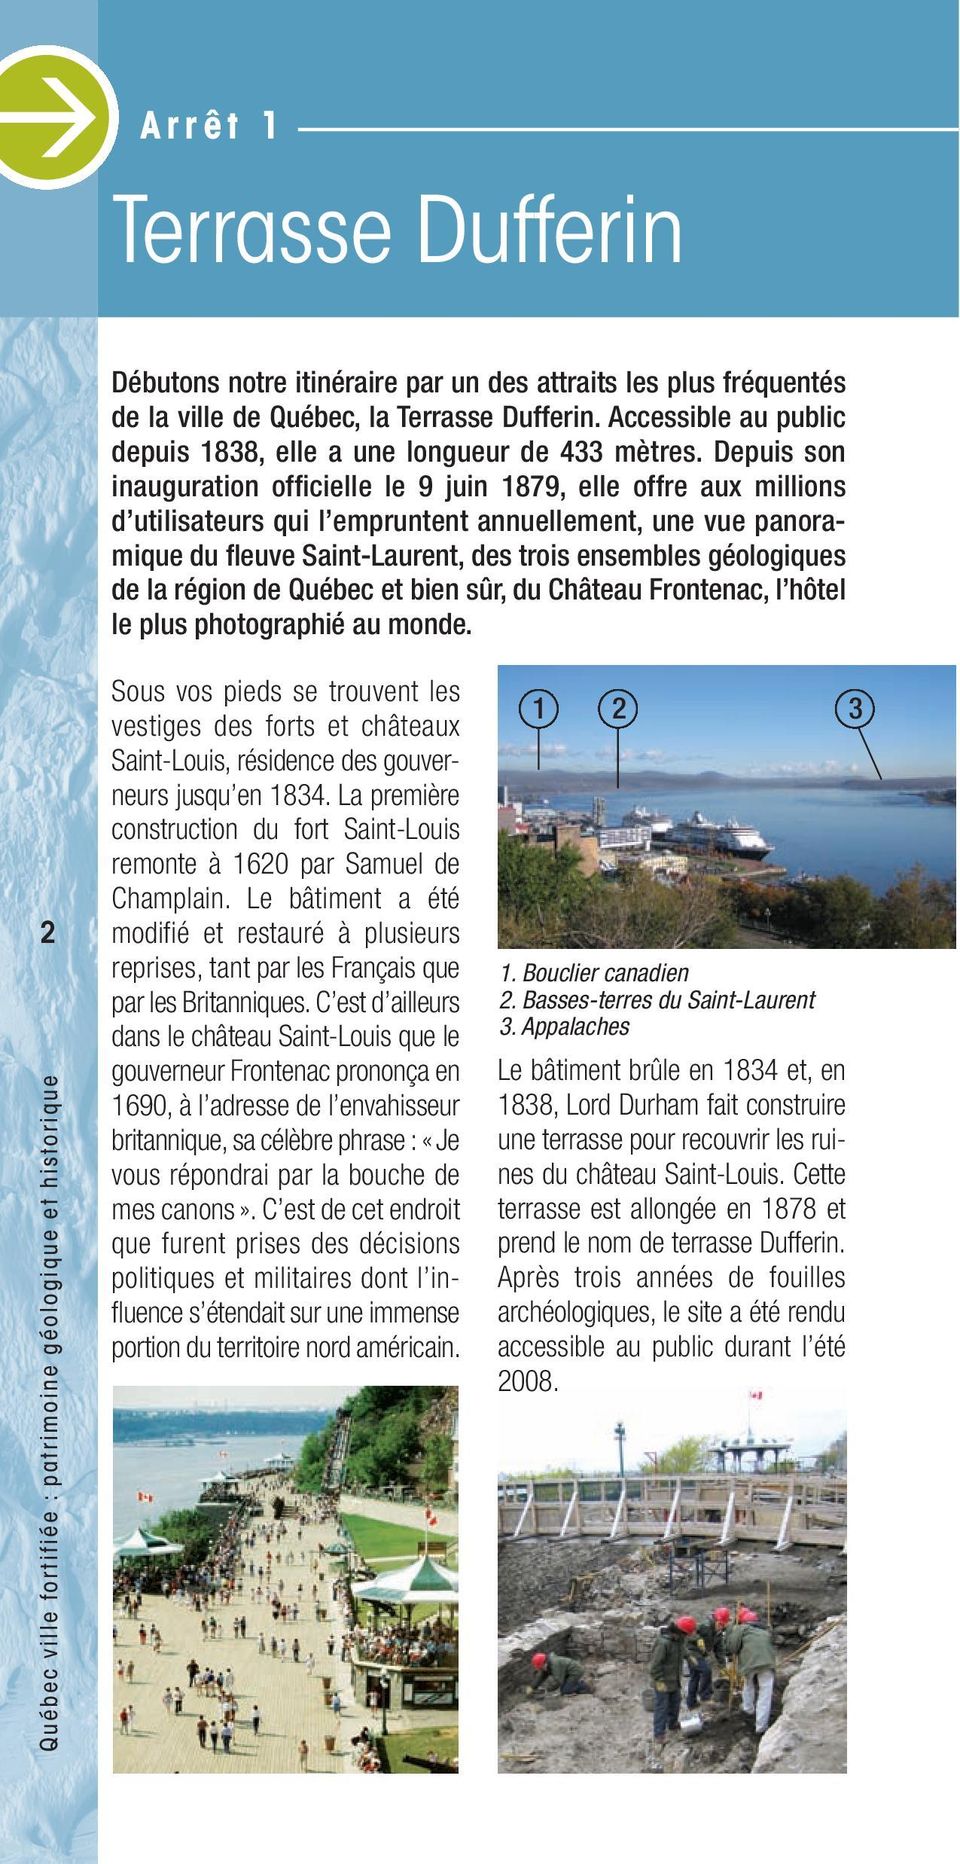 Depuis son inauguration officielle le 9 juin 1879, elle offre aux millions d utilisateurs qui l empruntent annuellement, une vue panoramique du fleuve Saint-Laurent, des trois ensembles géologiques